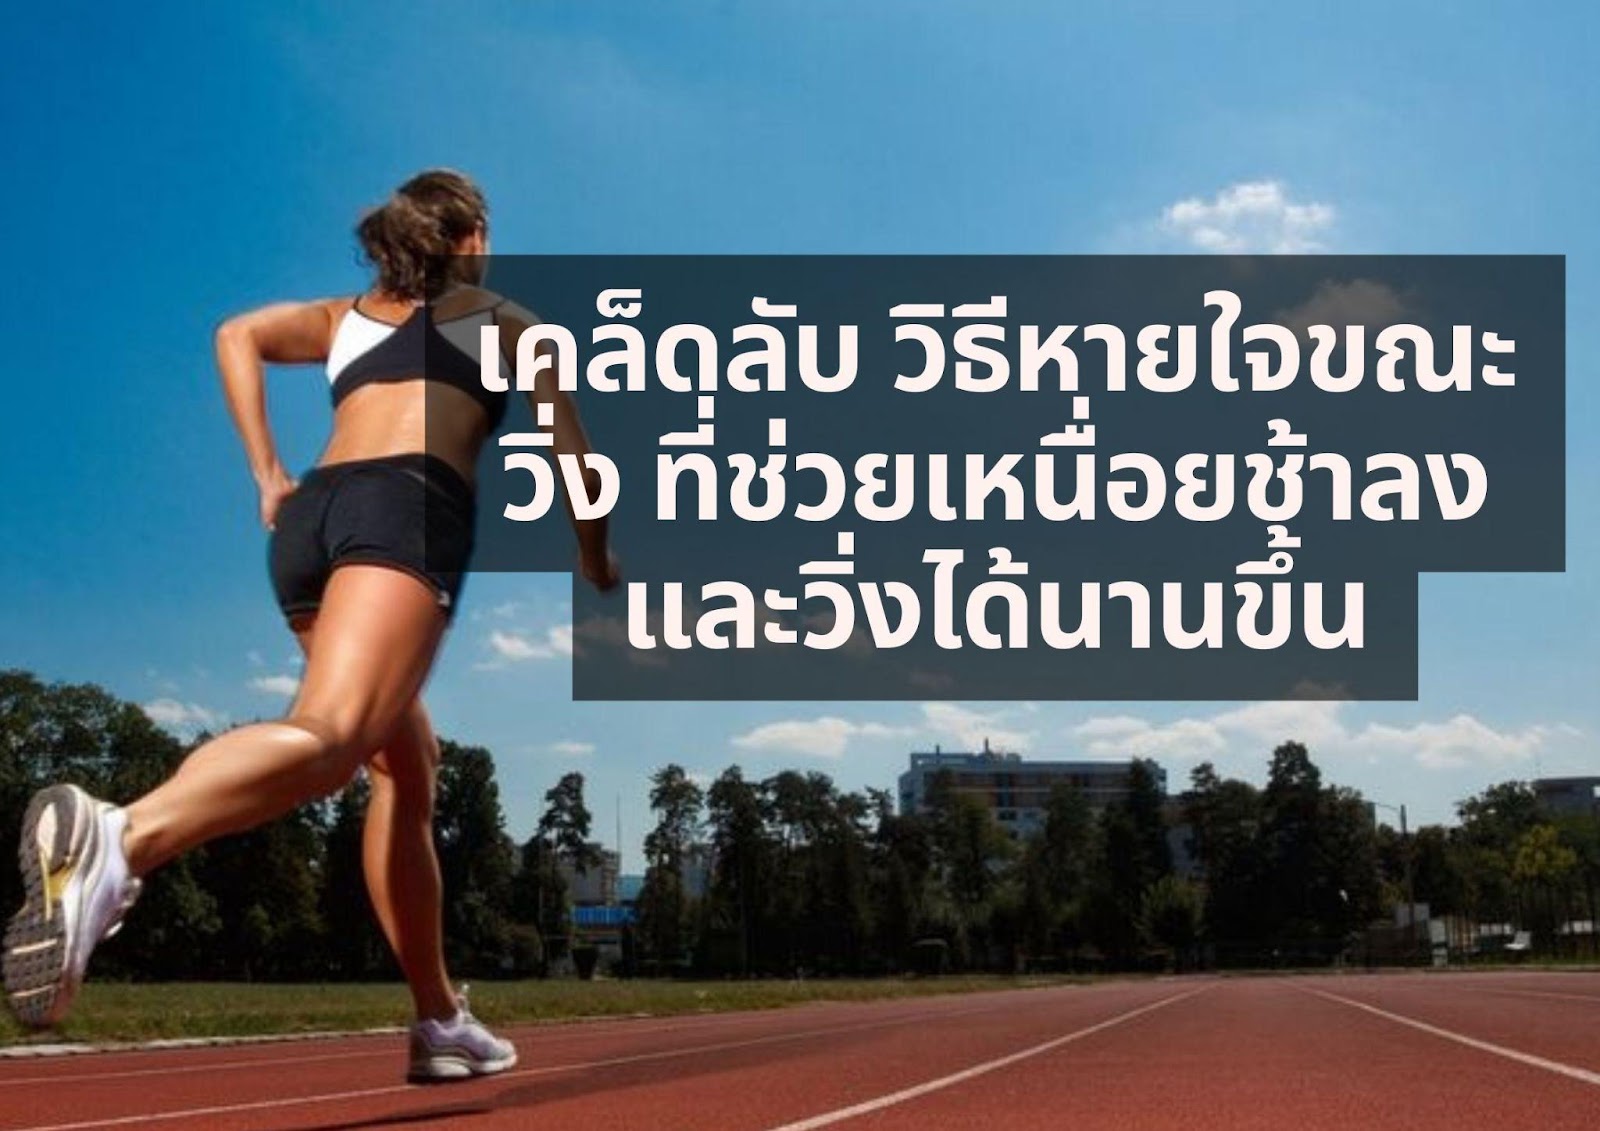 เคล็ดลับ วิธีหายใจขณะวิ่ง ที่ช่วยเหนื่อยช้าลงและวิ่งได้นานขึ้น